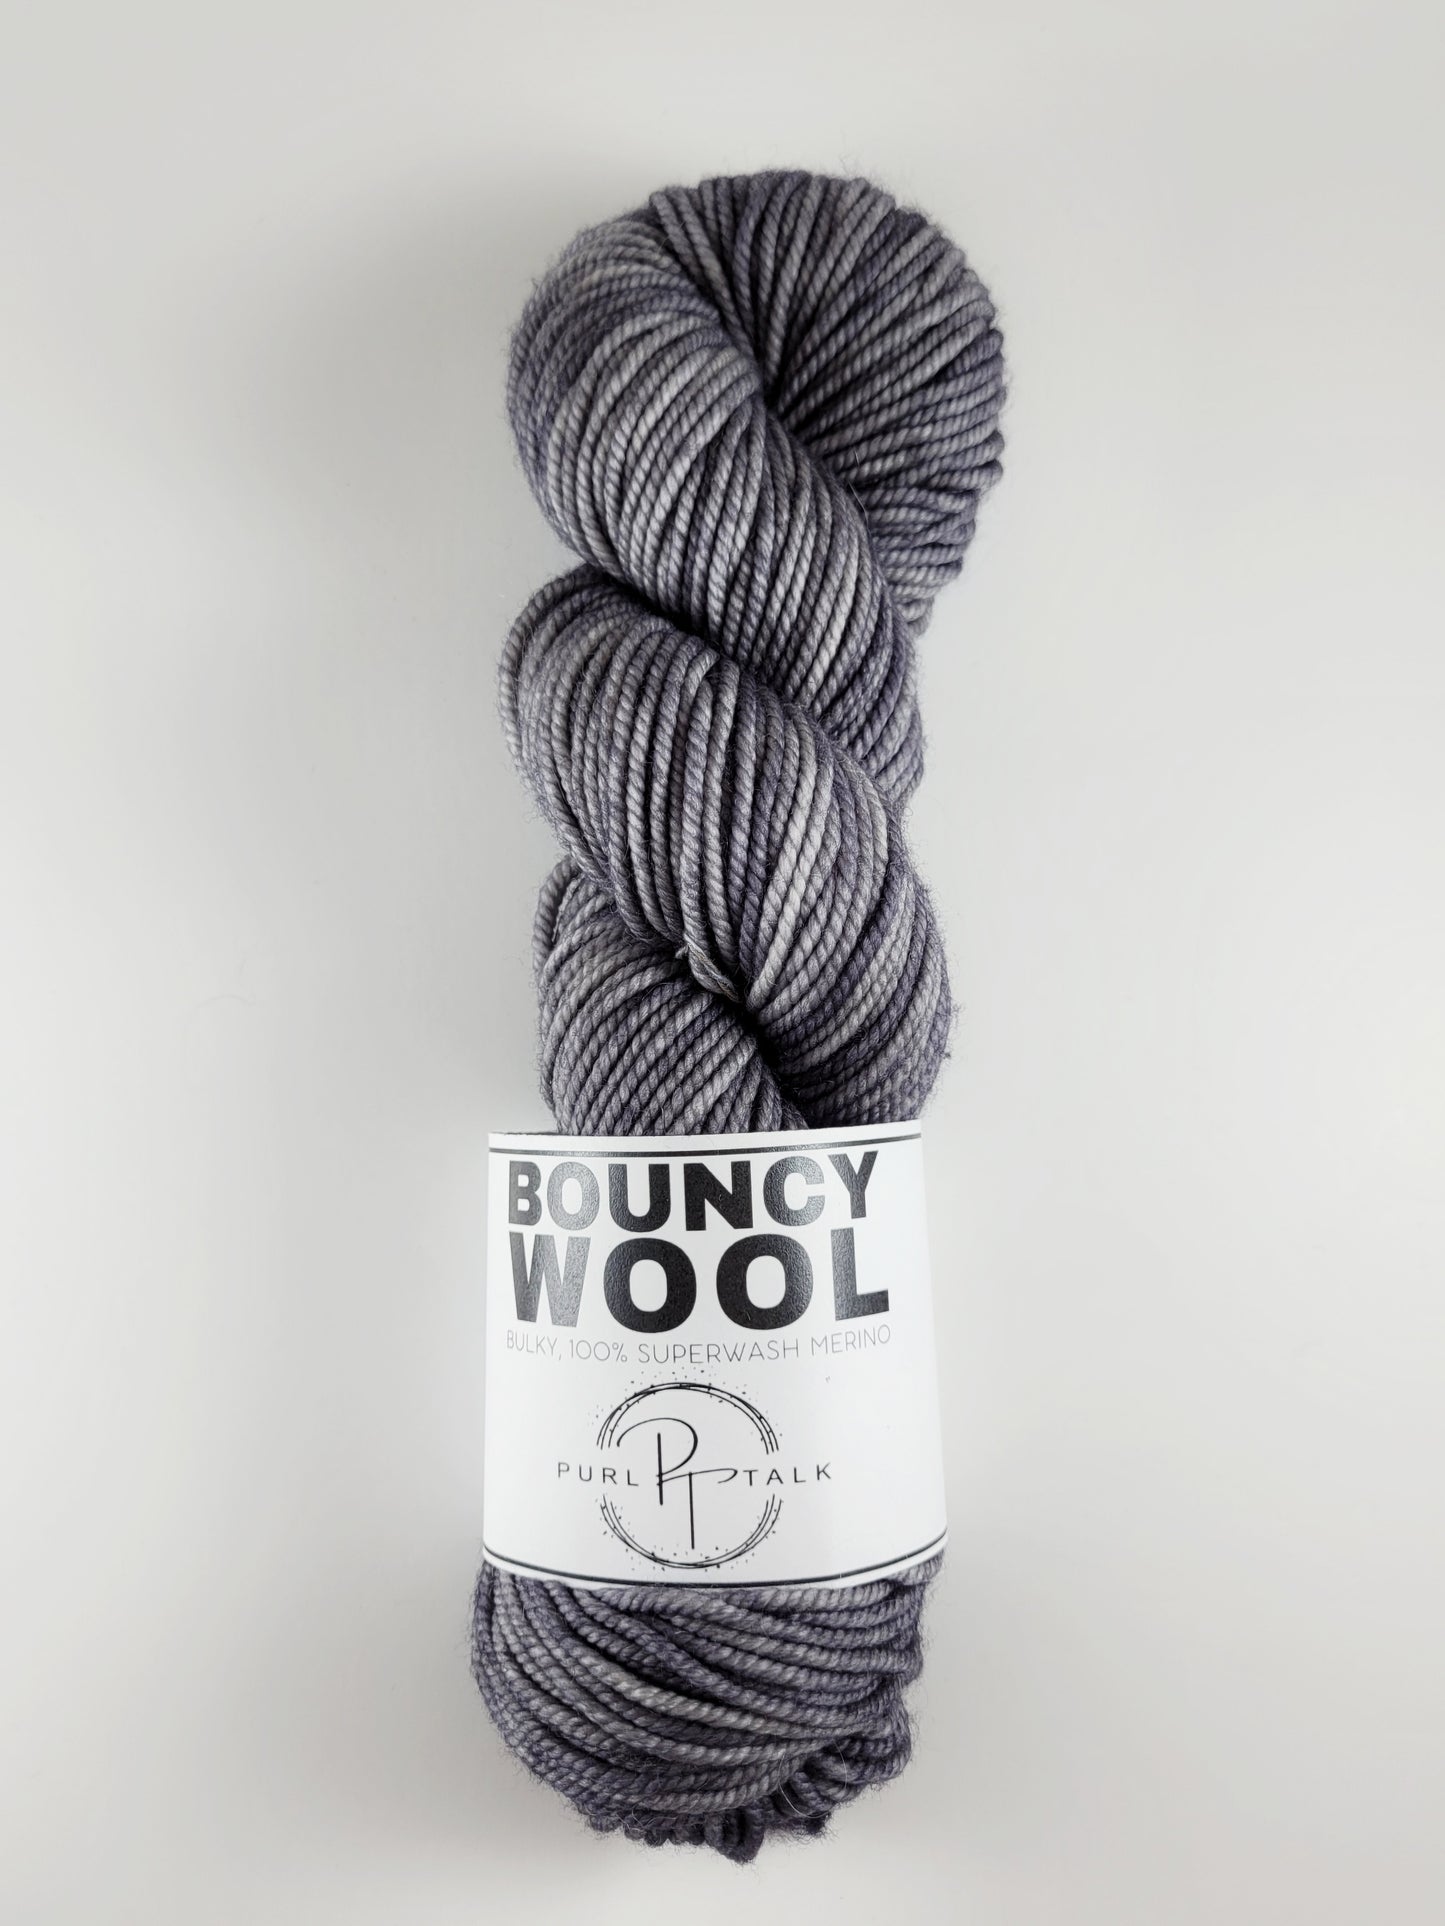 Bouncy Wool-Bulky, Color: Brain Fog